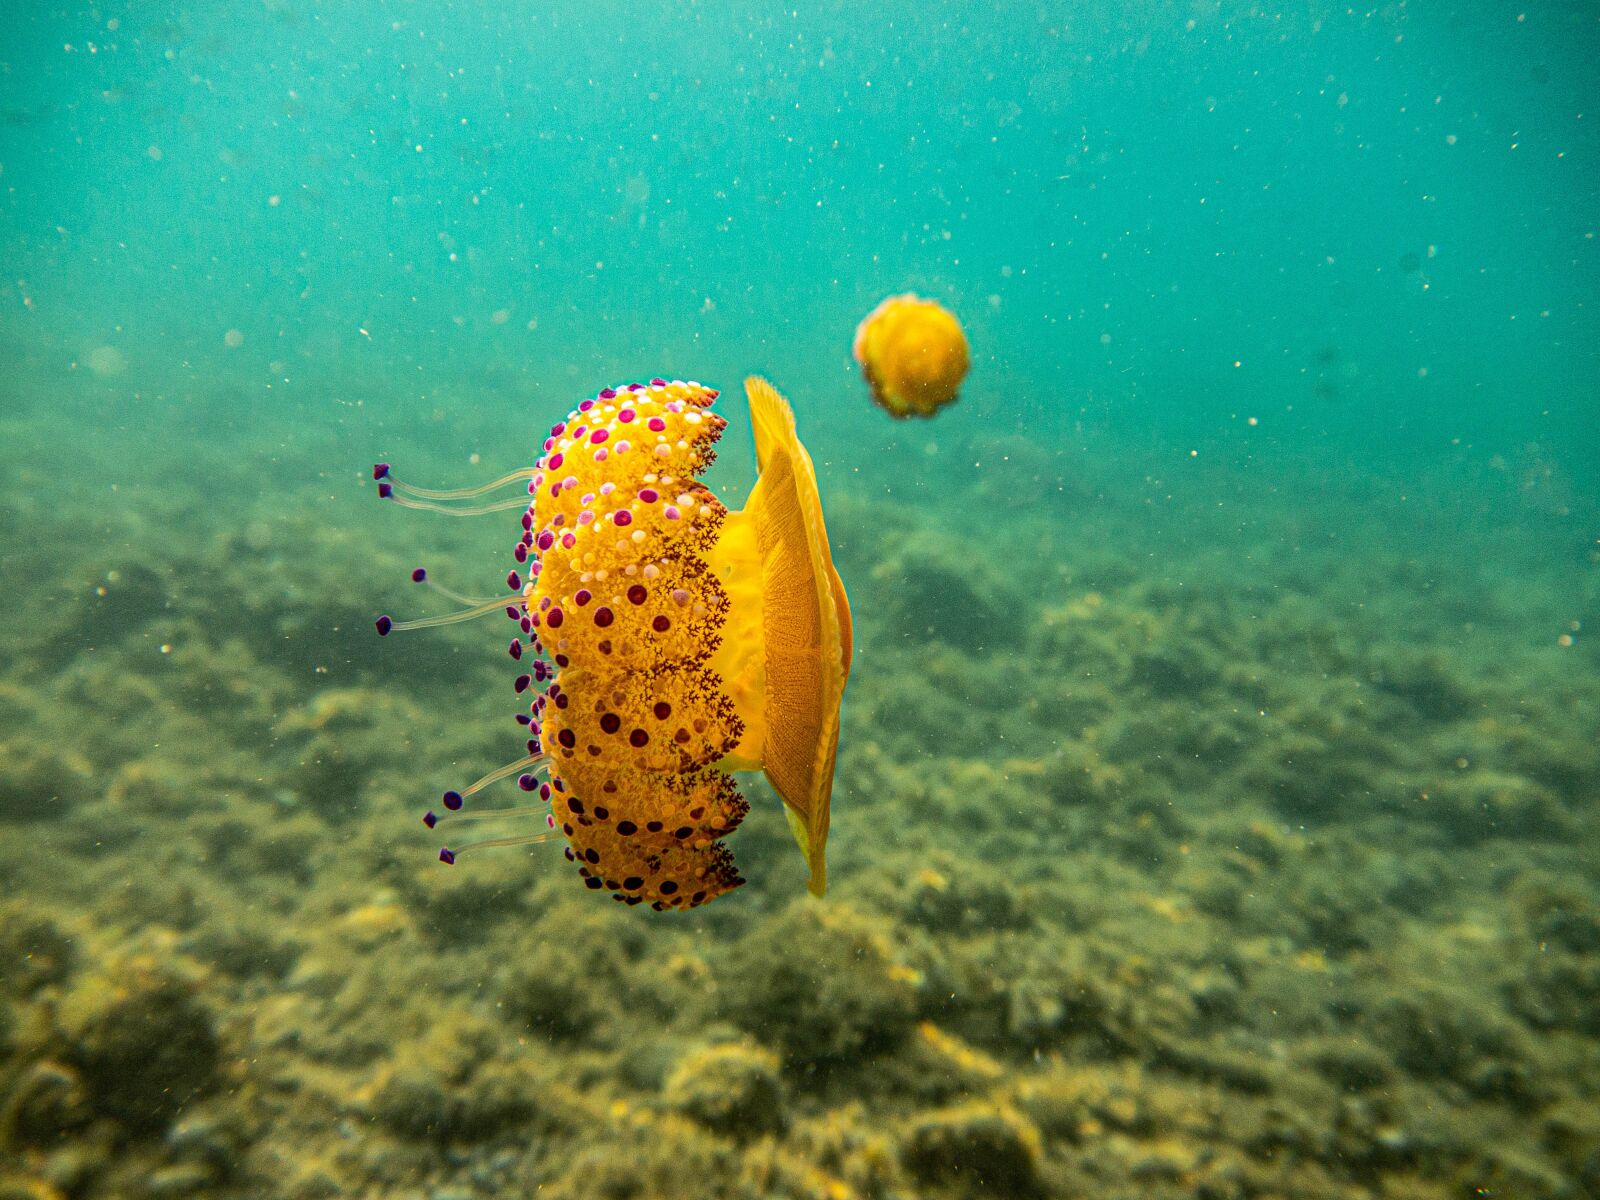 Panasonic Lumix DMC-GF3 sample photo. Jellyfish, underwater, ocean photography